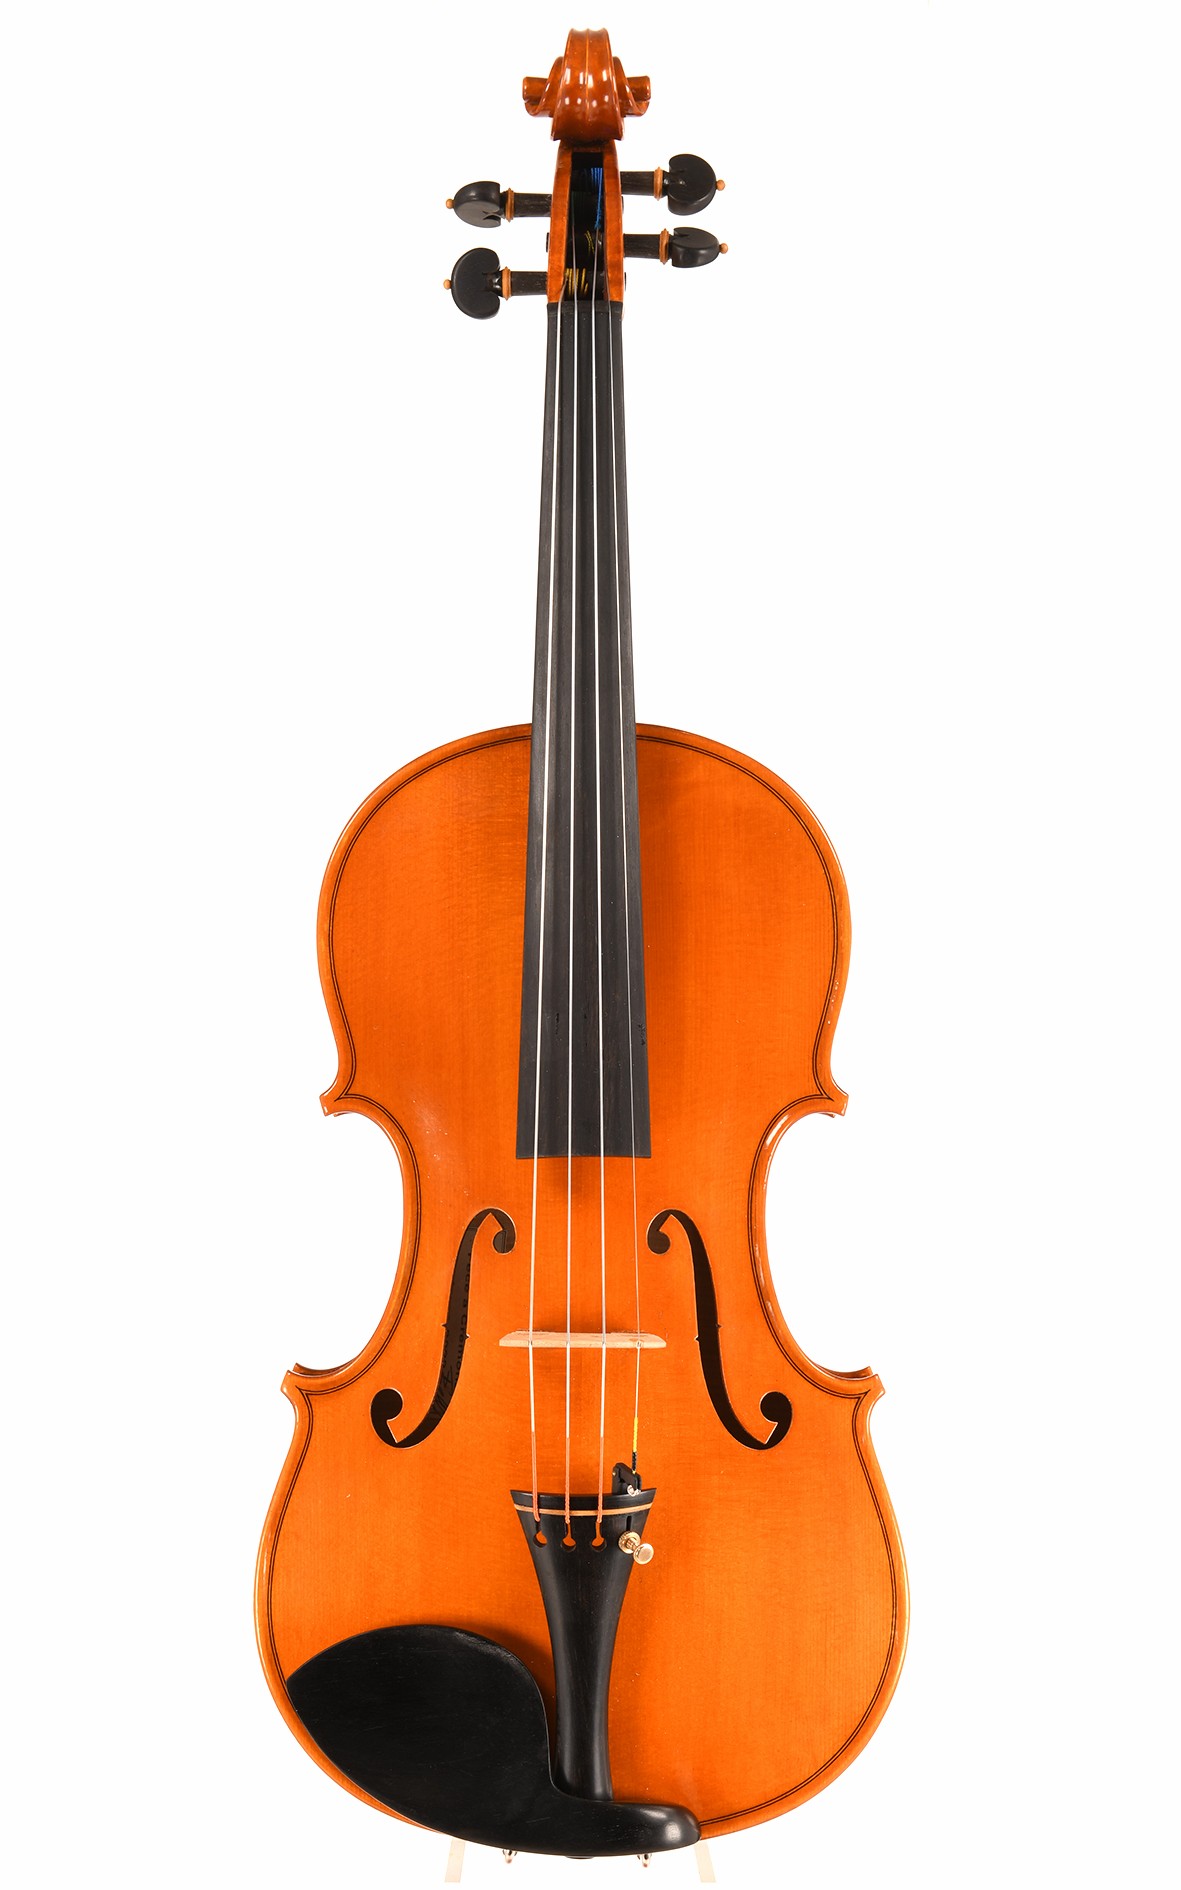 Cremona violin by Ignazio Belli (certificate) - violinist's recommendation!